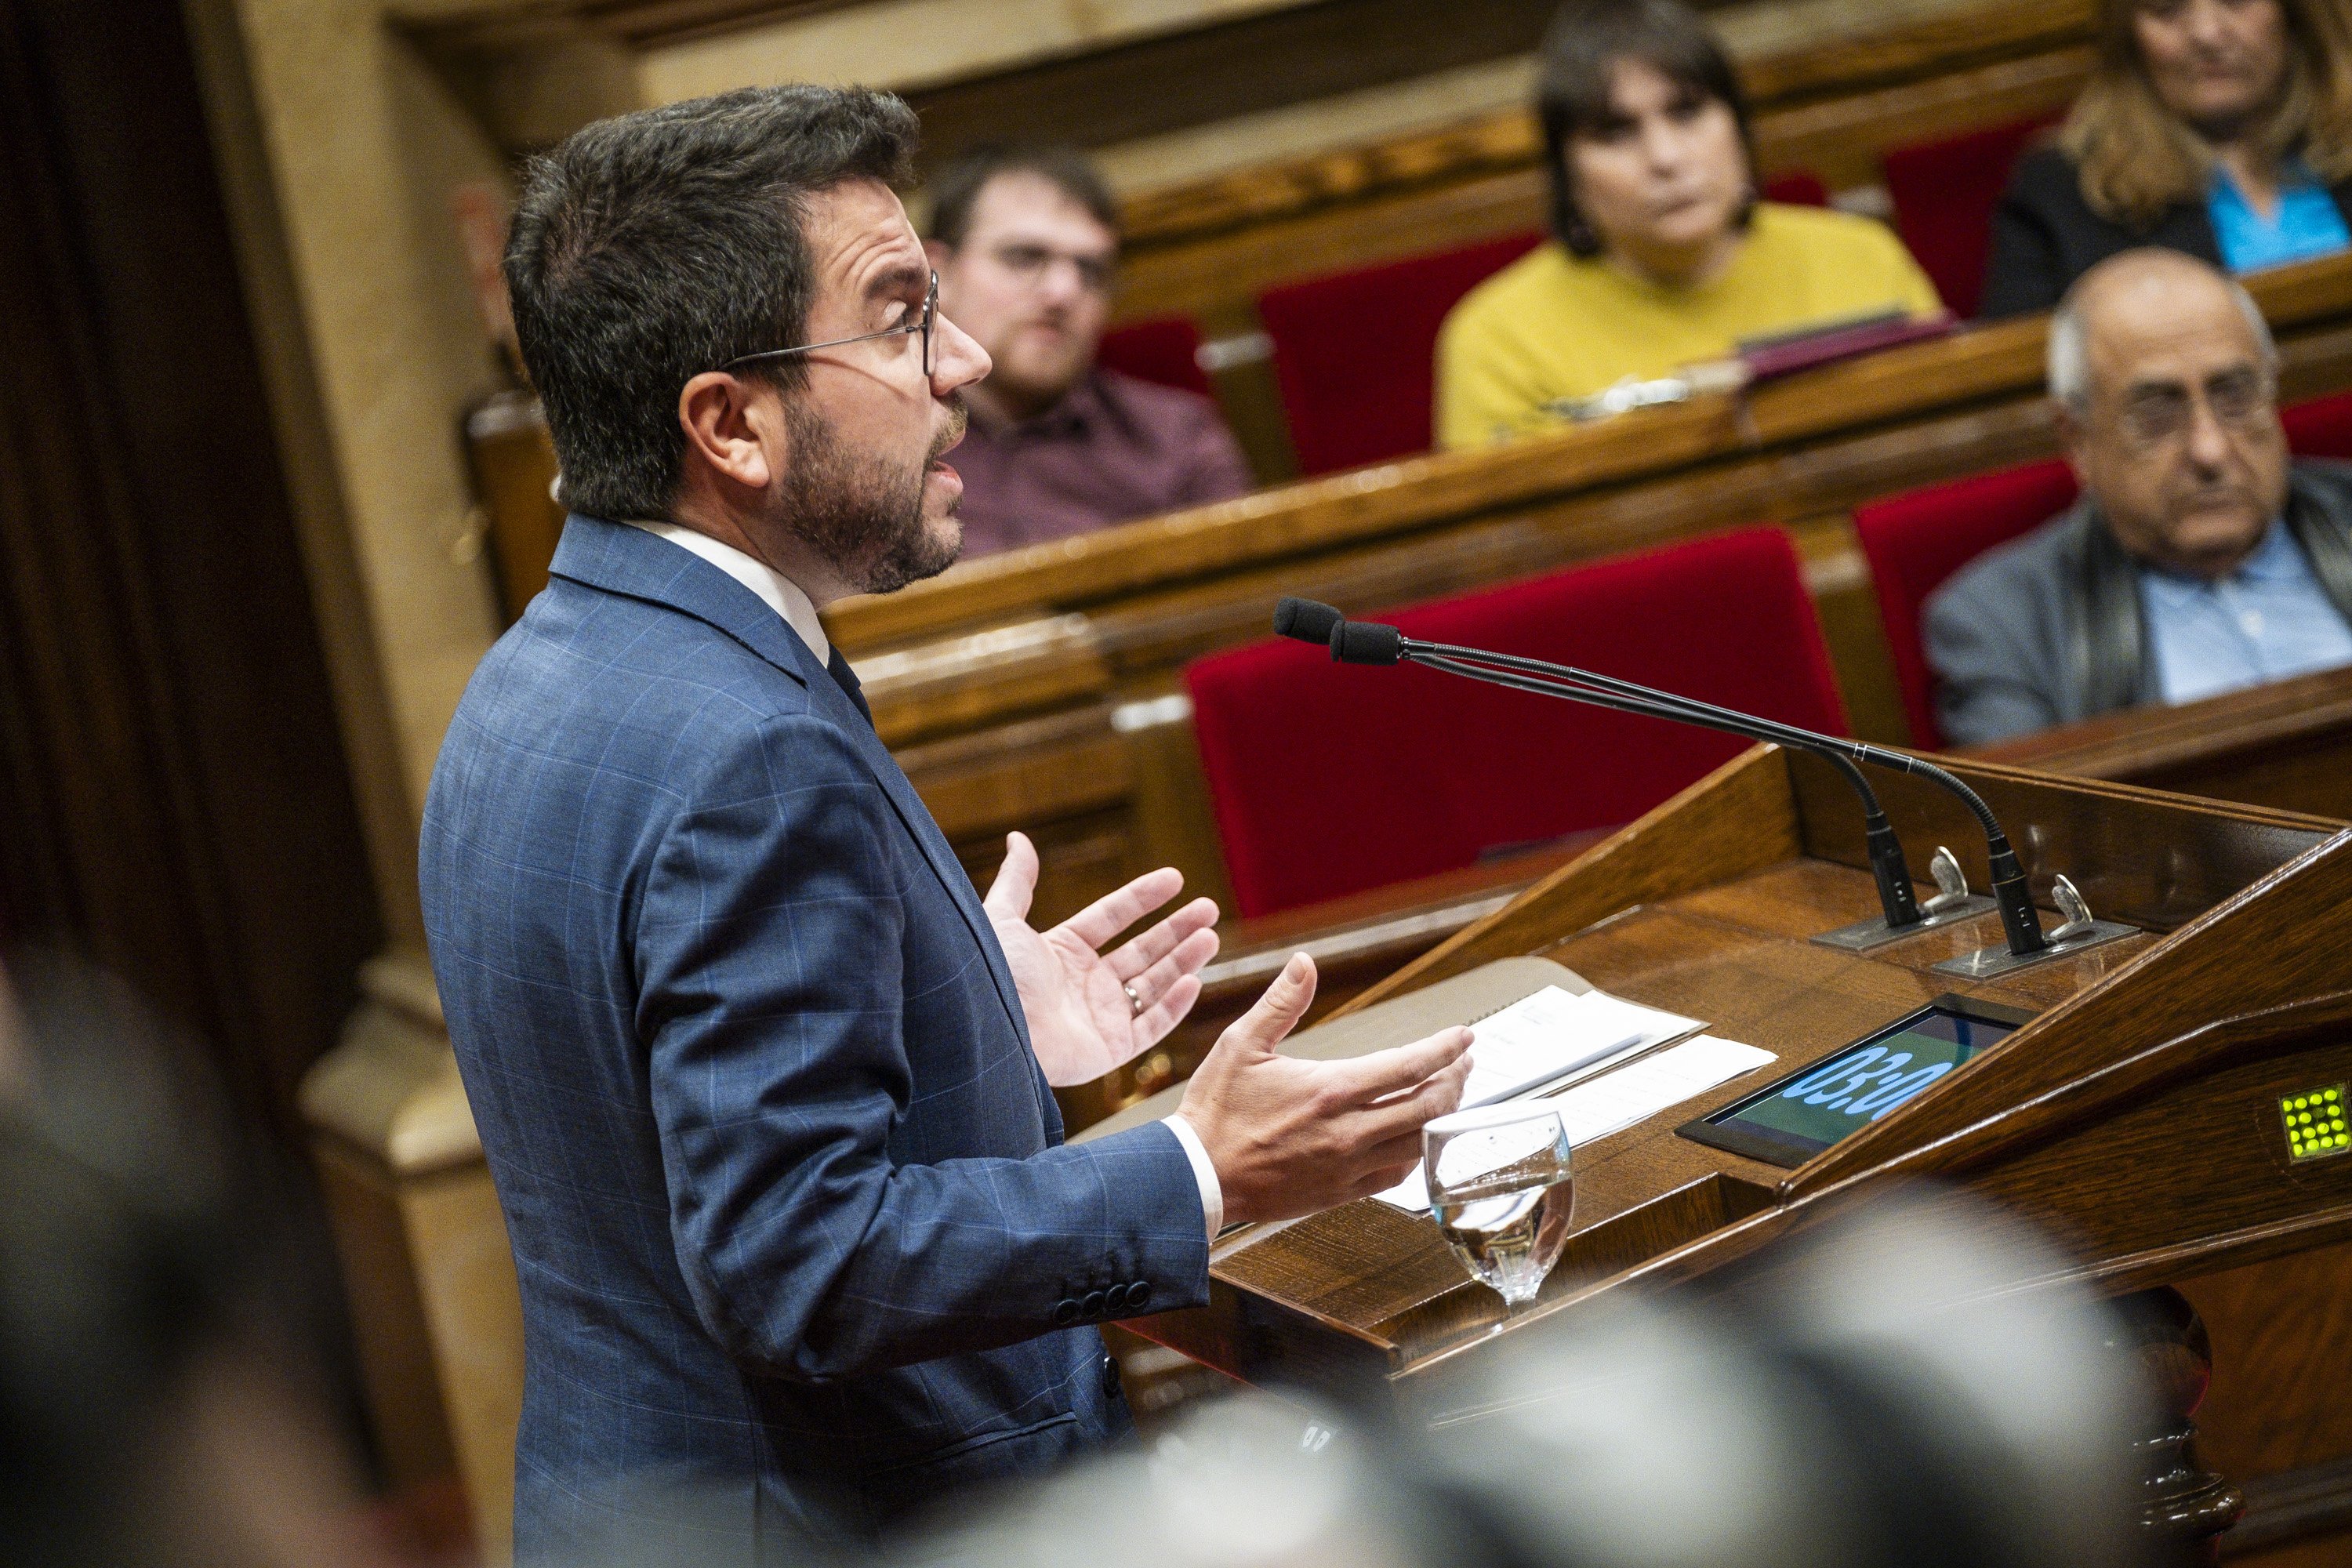 Aragonès convocará a los partidos para dar respuesta al descalabro del informe PISA